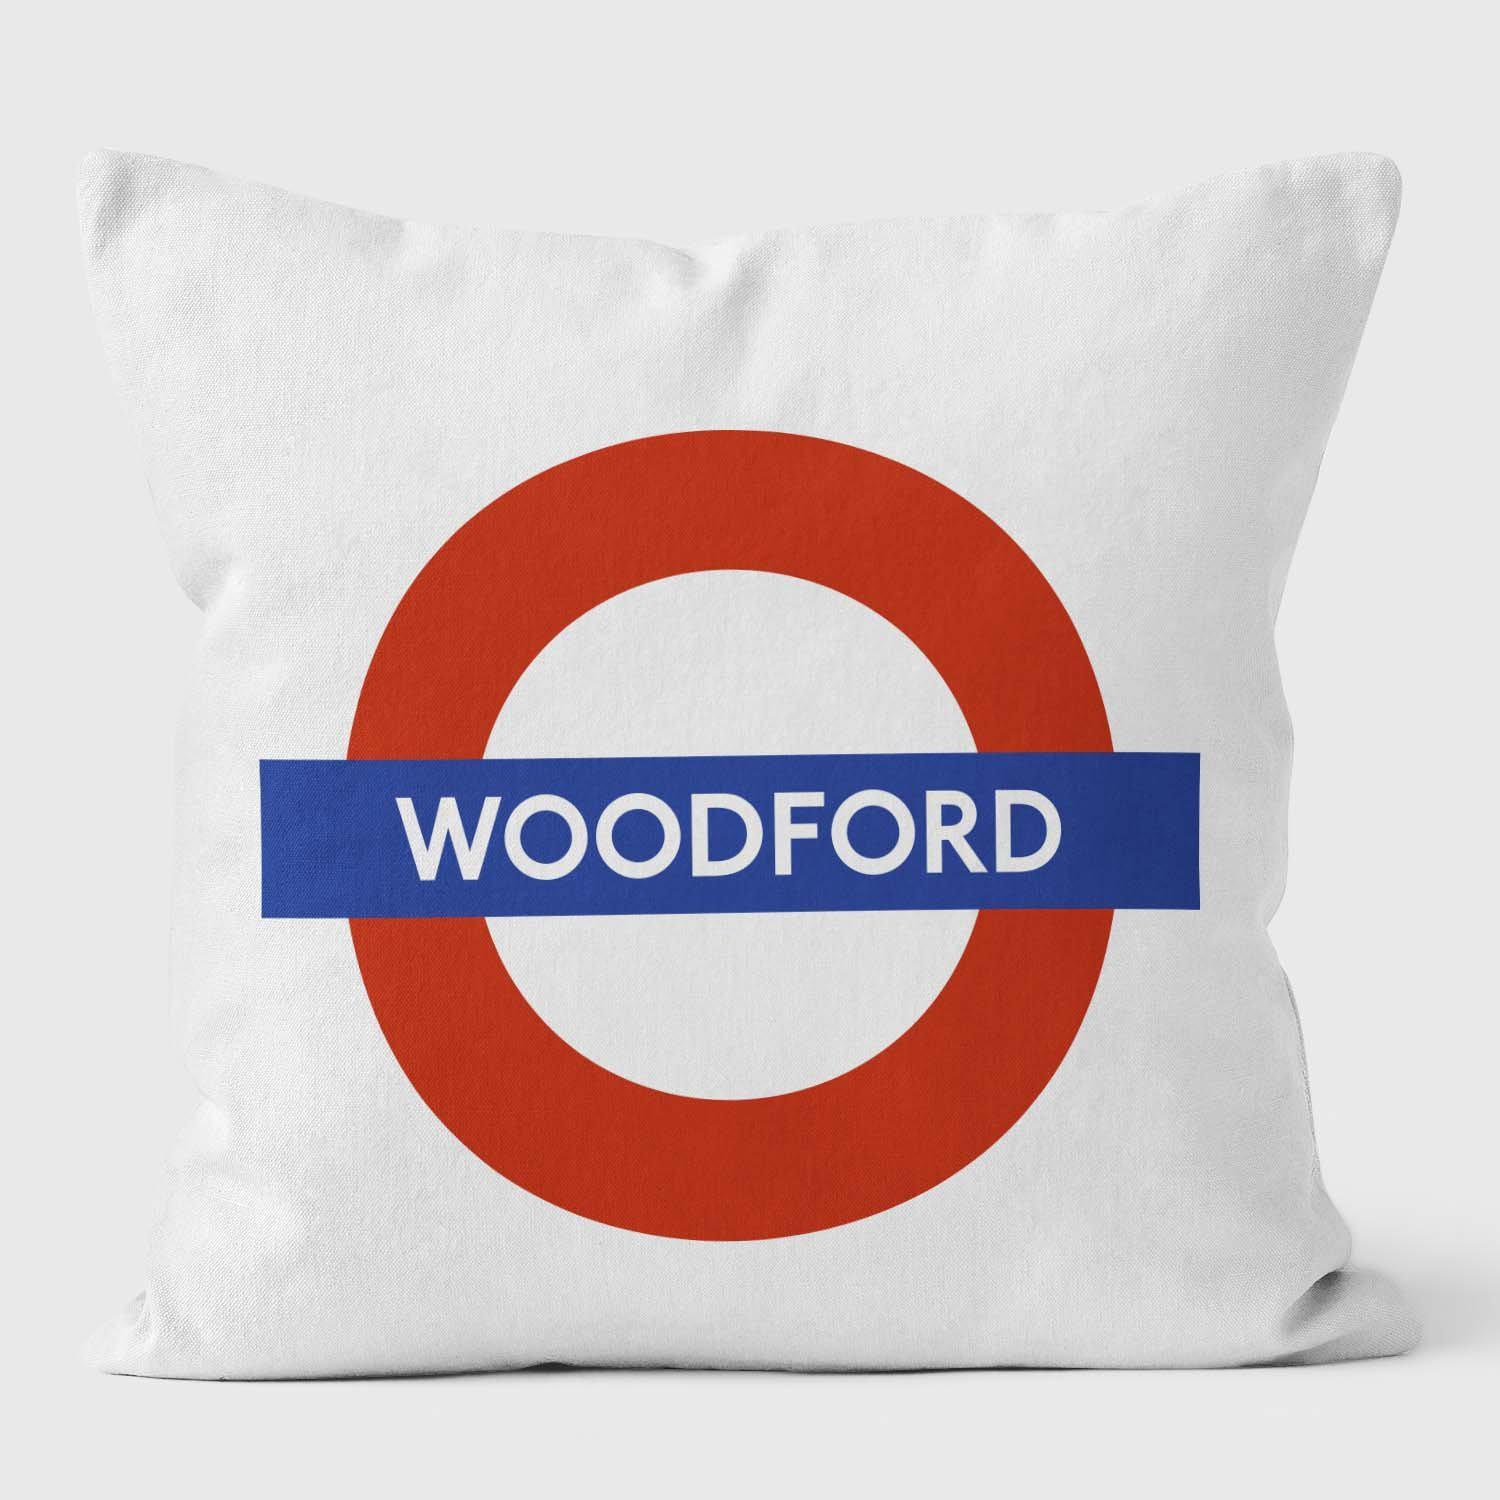 Woodford London Underground Tube Station Roundel Cushion - Handmade Cushions UK - WeLoveCushions